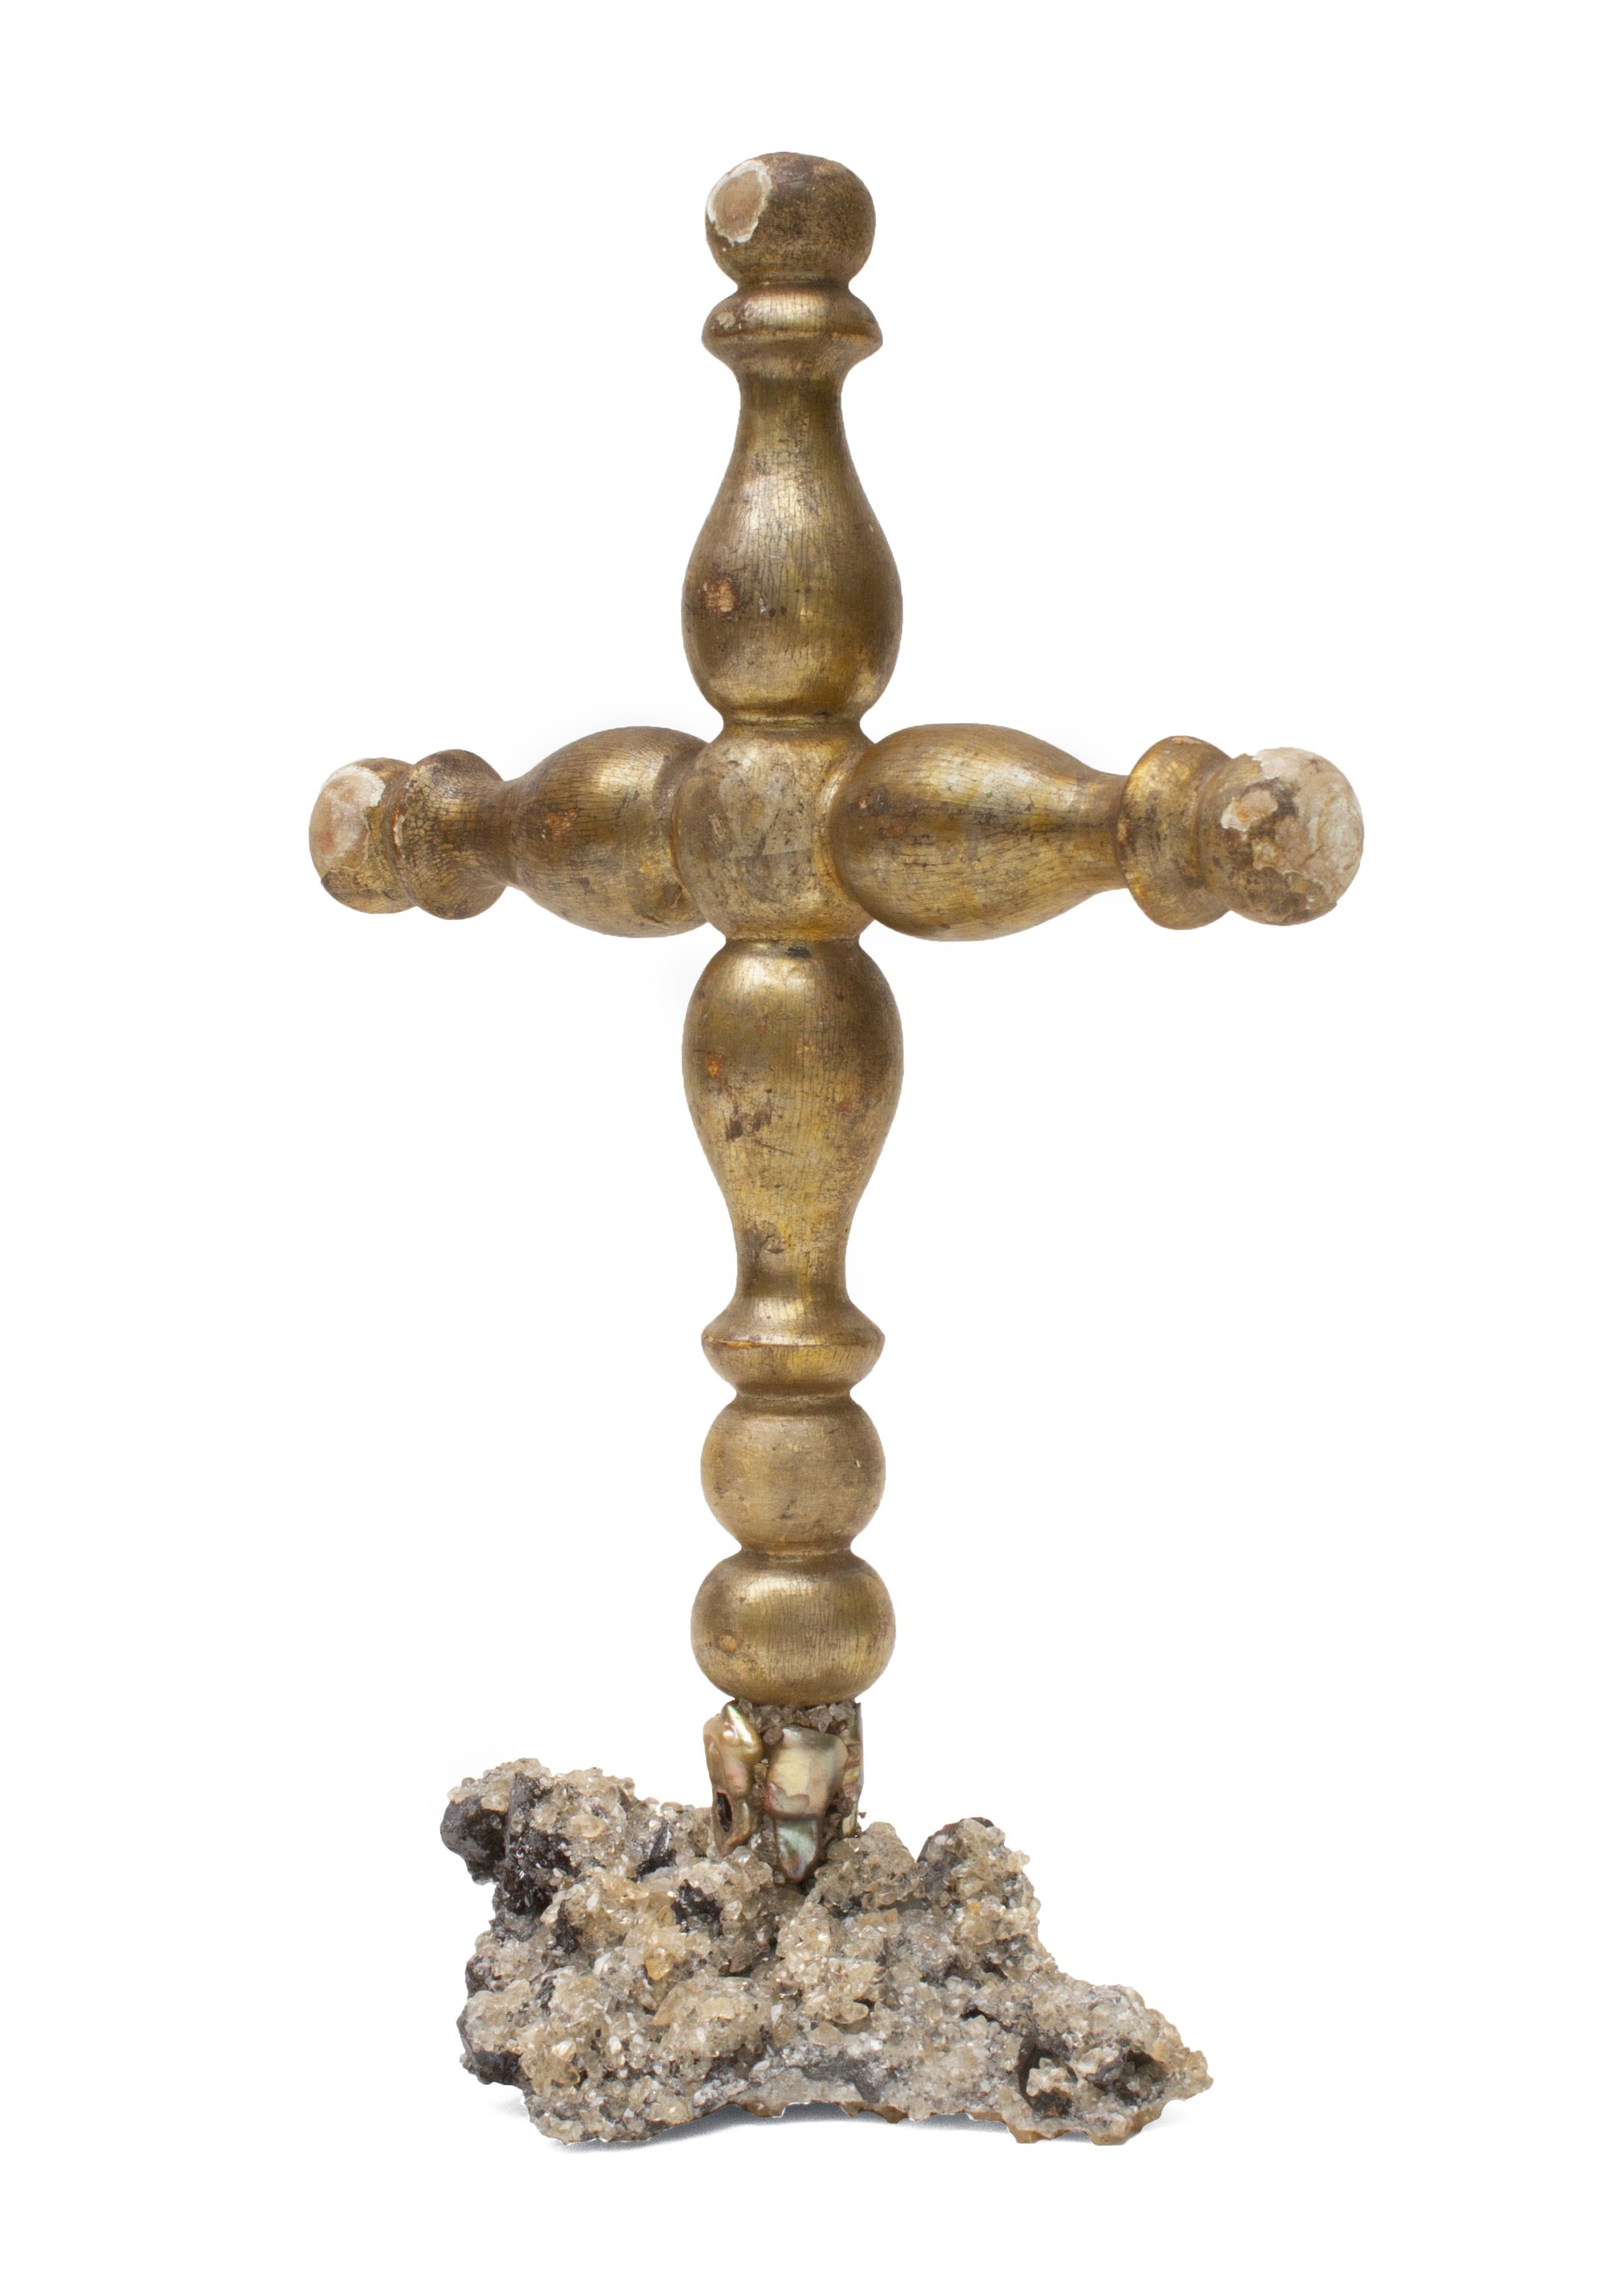 Italienisches Mekka-Prozessionskreuz aus dem 18. Jahrhundert auf einem Sockel aus Kalzitkristall in Matrix mit koordinierten Barockperlen.

Die Kalzitkristallgruppe in der Matrix stammt aus der Elmwood Mine in Tennessee. Er ist ein Beispiel für